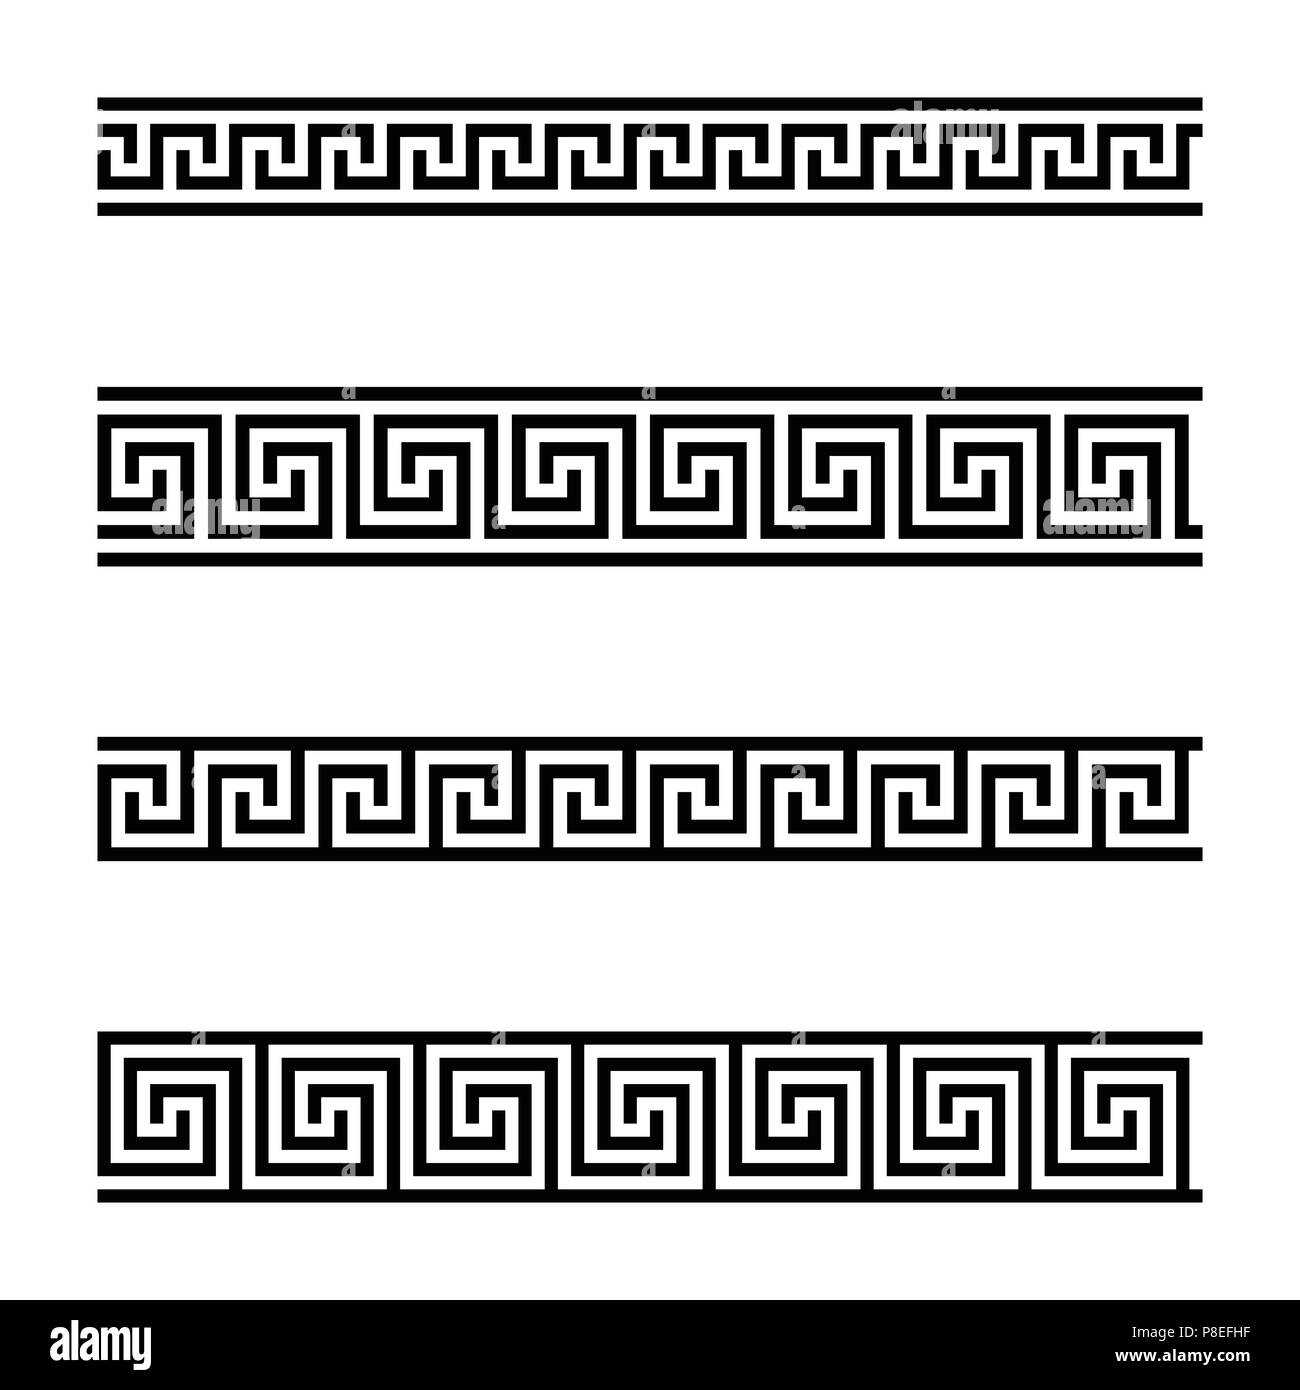 Nahtlose mäander Muster auf weißem Hintergrund. Meandros, eine dekorative Grenze, aus fortlaufenden Linien, in ein wiederholtes Motiv geprägt. Auch die Griechische fret. Stockfoto